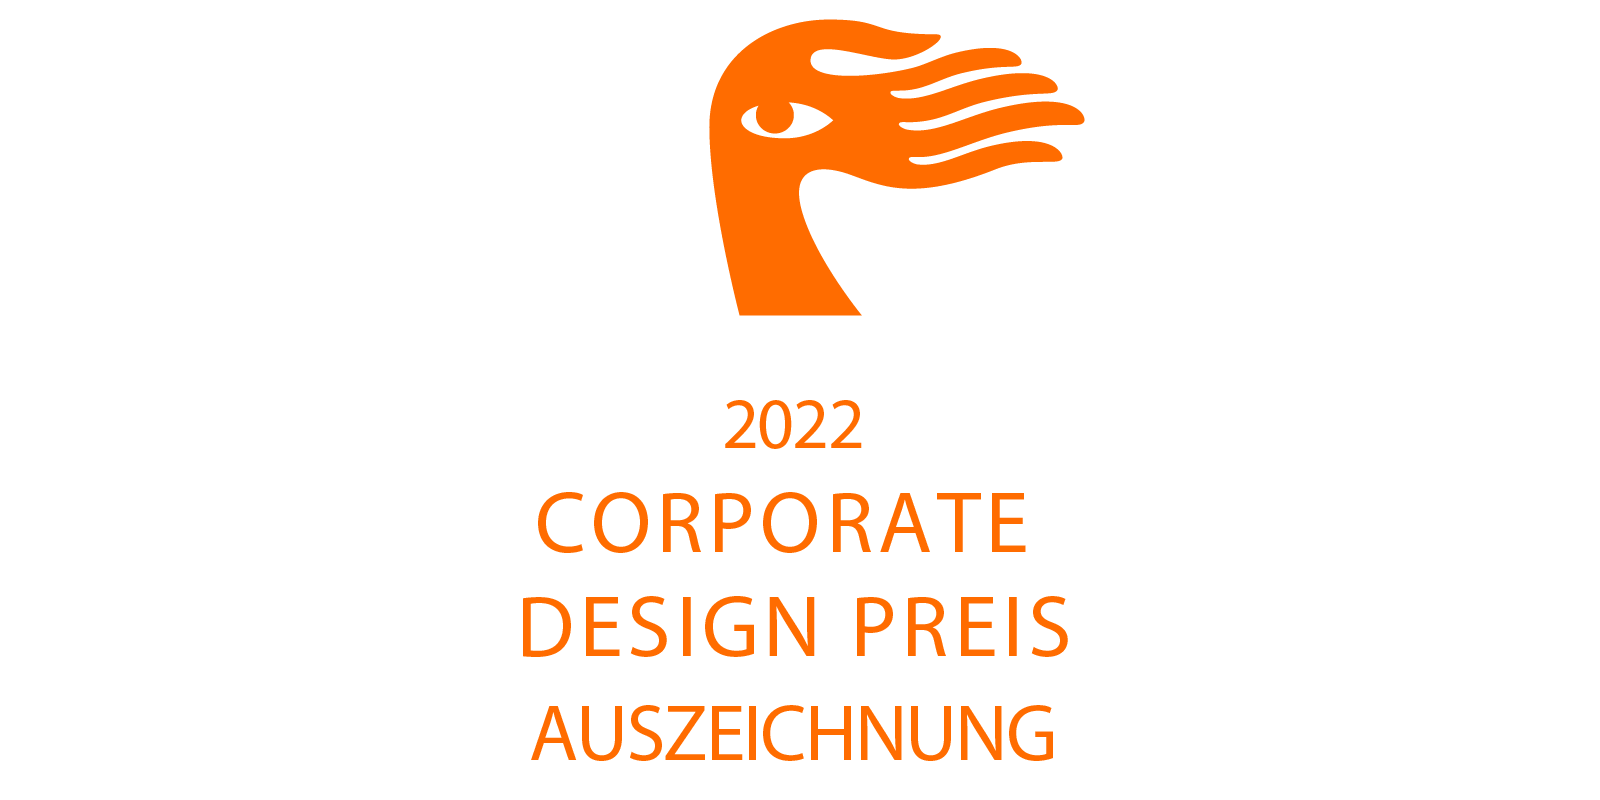 Corporate Design Preis 2022 Auszeichnung